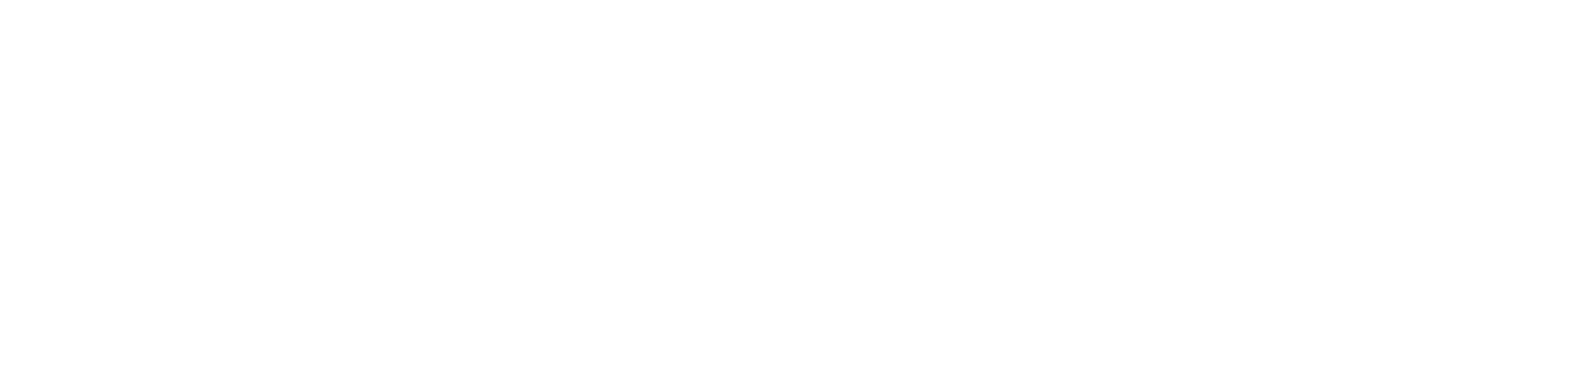 FibroGen logo grand pour les fonds sombres (PNG transparent)